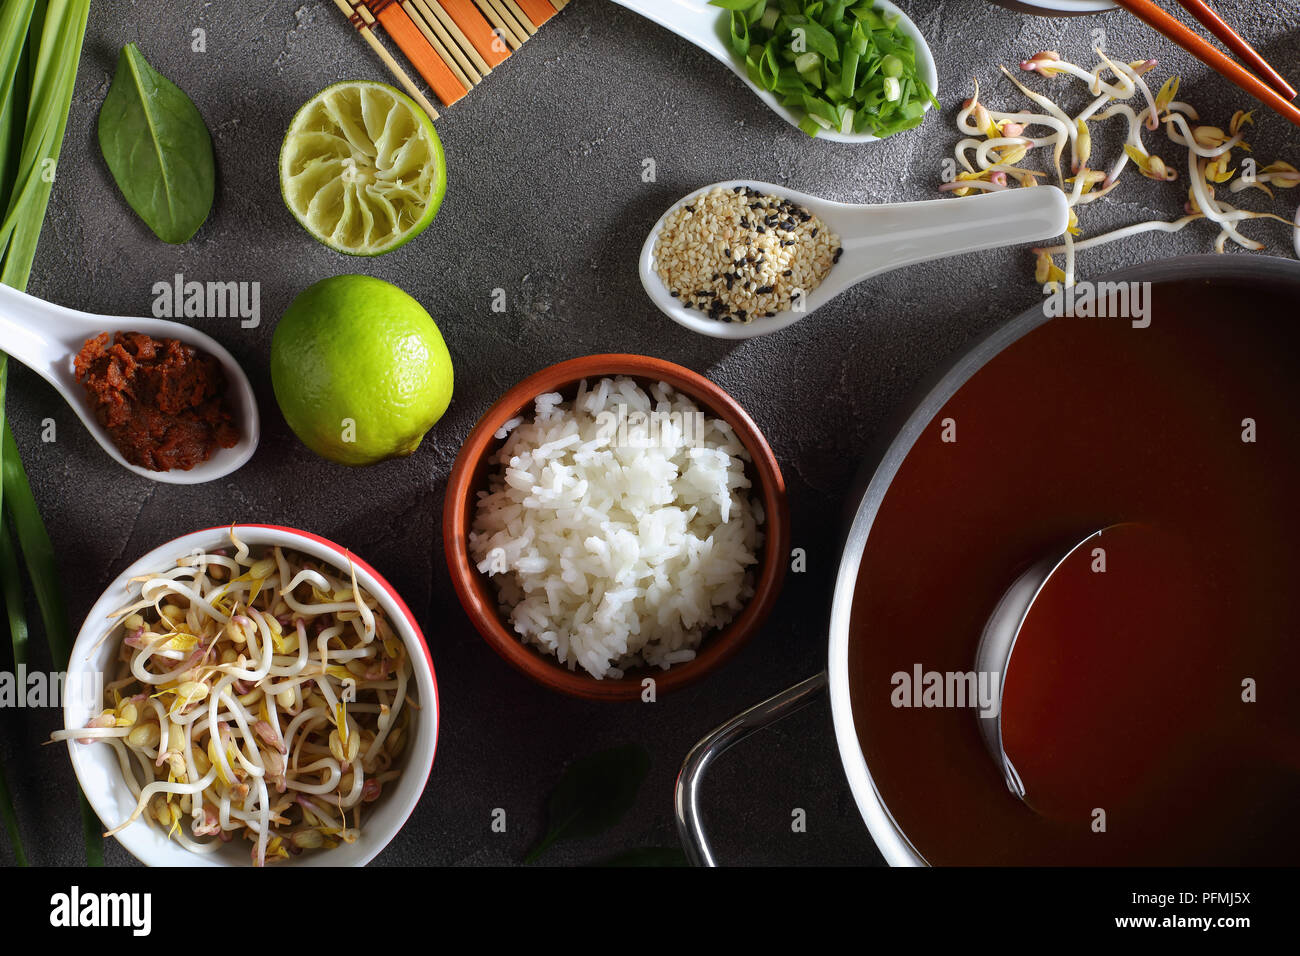 Ingrédients pour la soupe miso sur fond de béton - dashi miso à coller dans le moule, la pâte de miso, graines de sésame, du riz vapeur, épinards, fèves germées, vert Banque D'Images